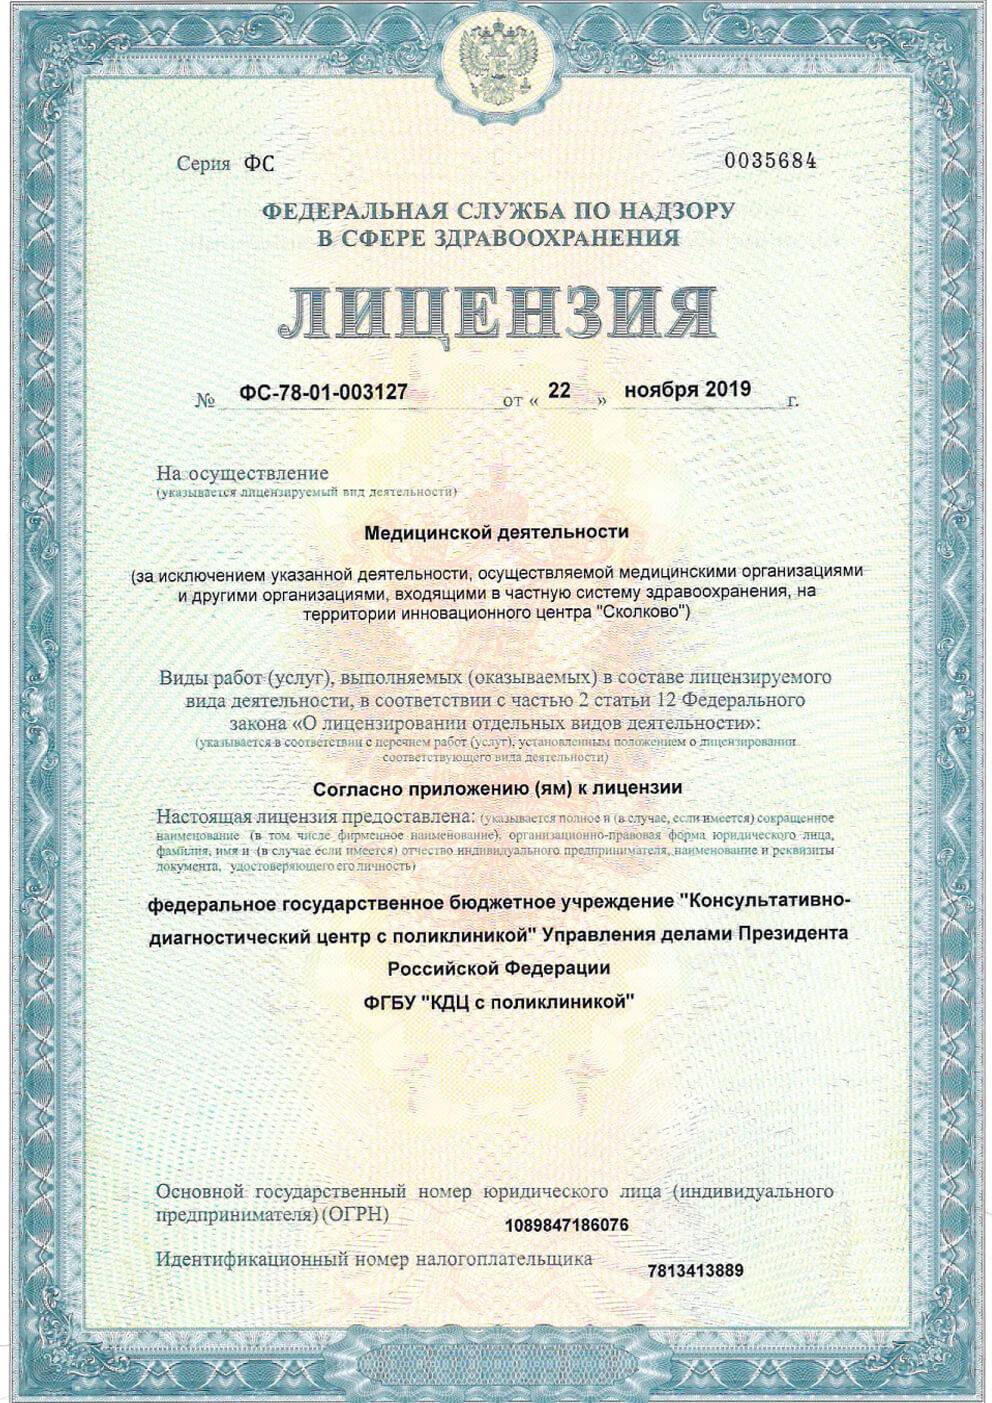 ФГБУ «Консультативно-диагностический центр с поликлиникой» лицензия №1